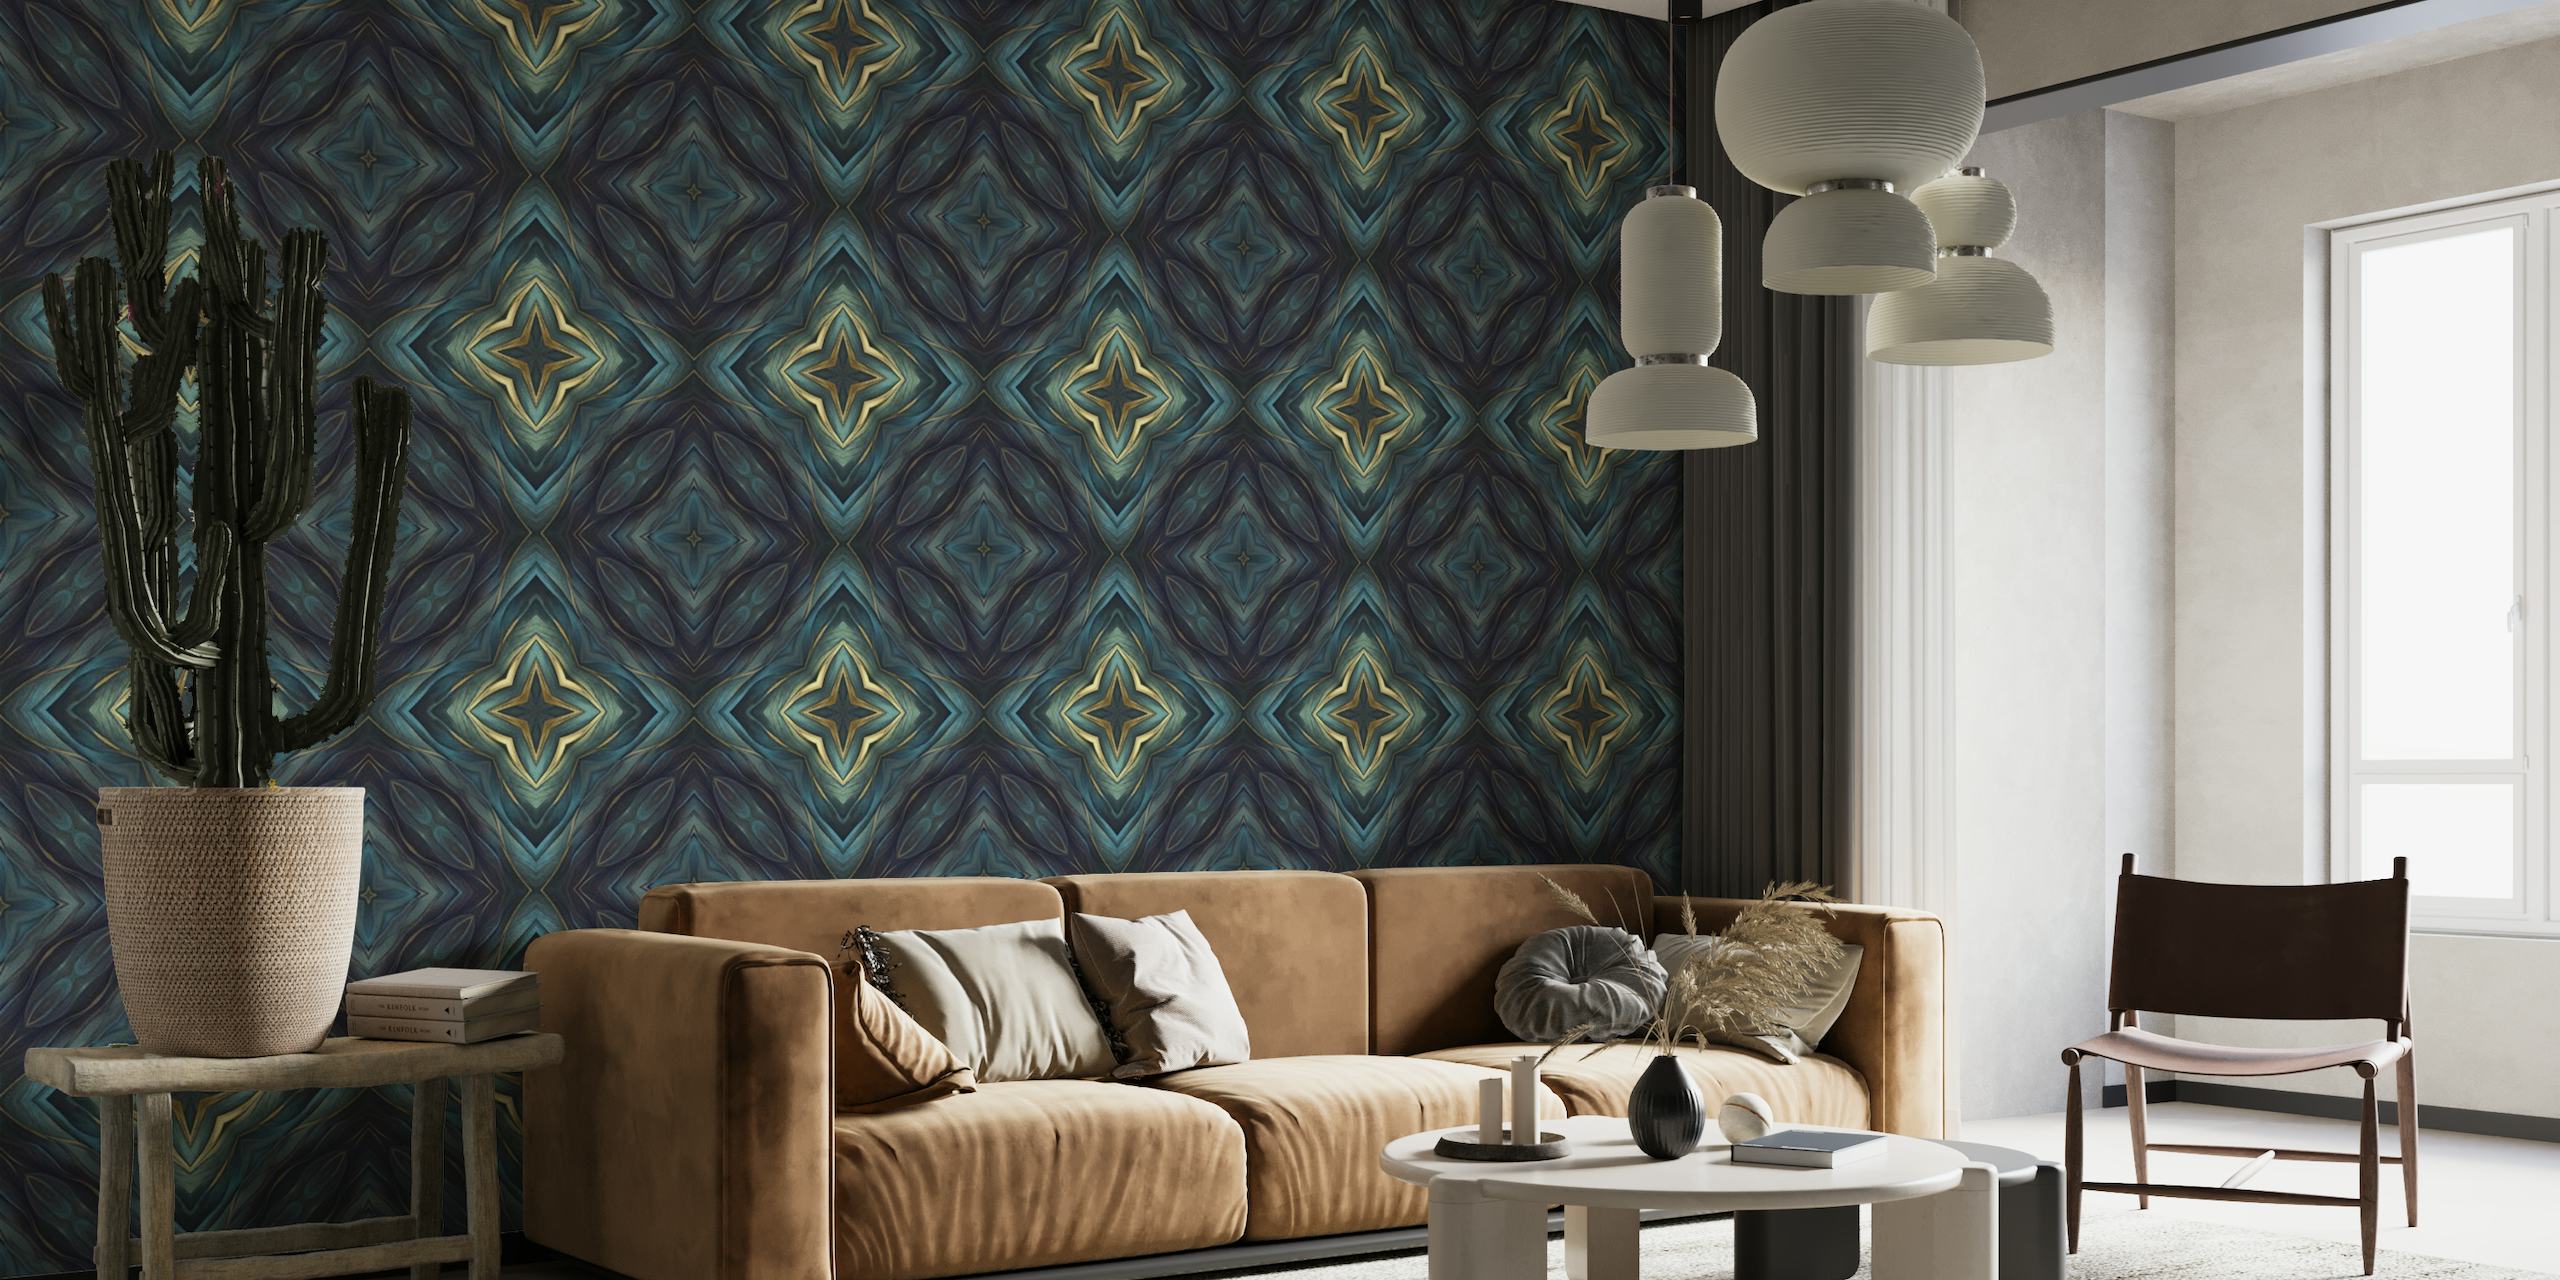 Artisanal Mediterranean Tile Design Blue Gold_2 wallpaper